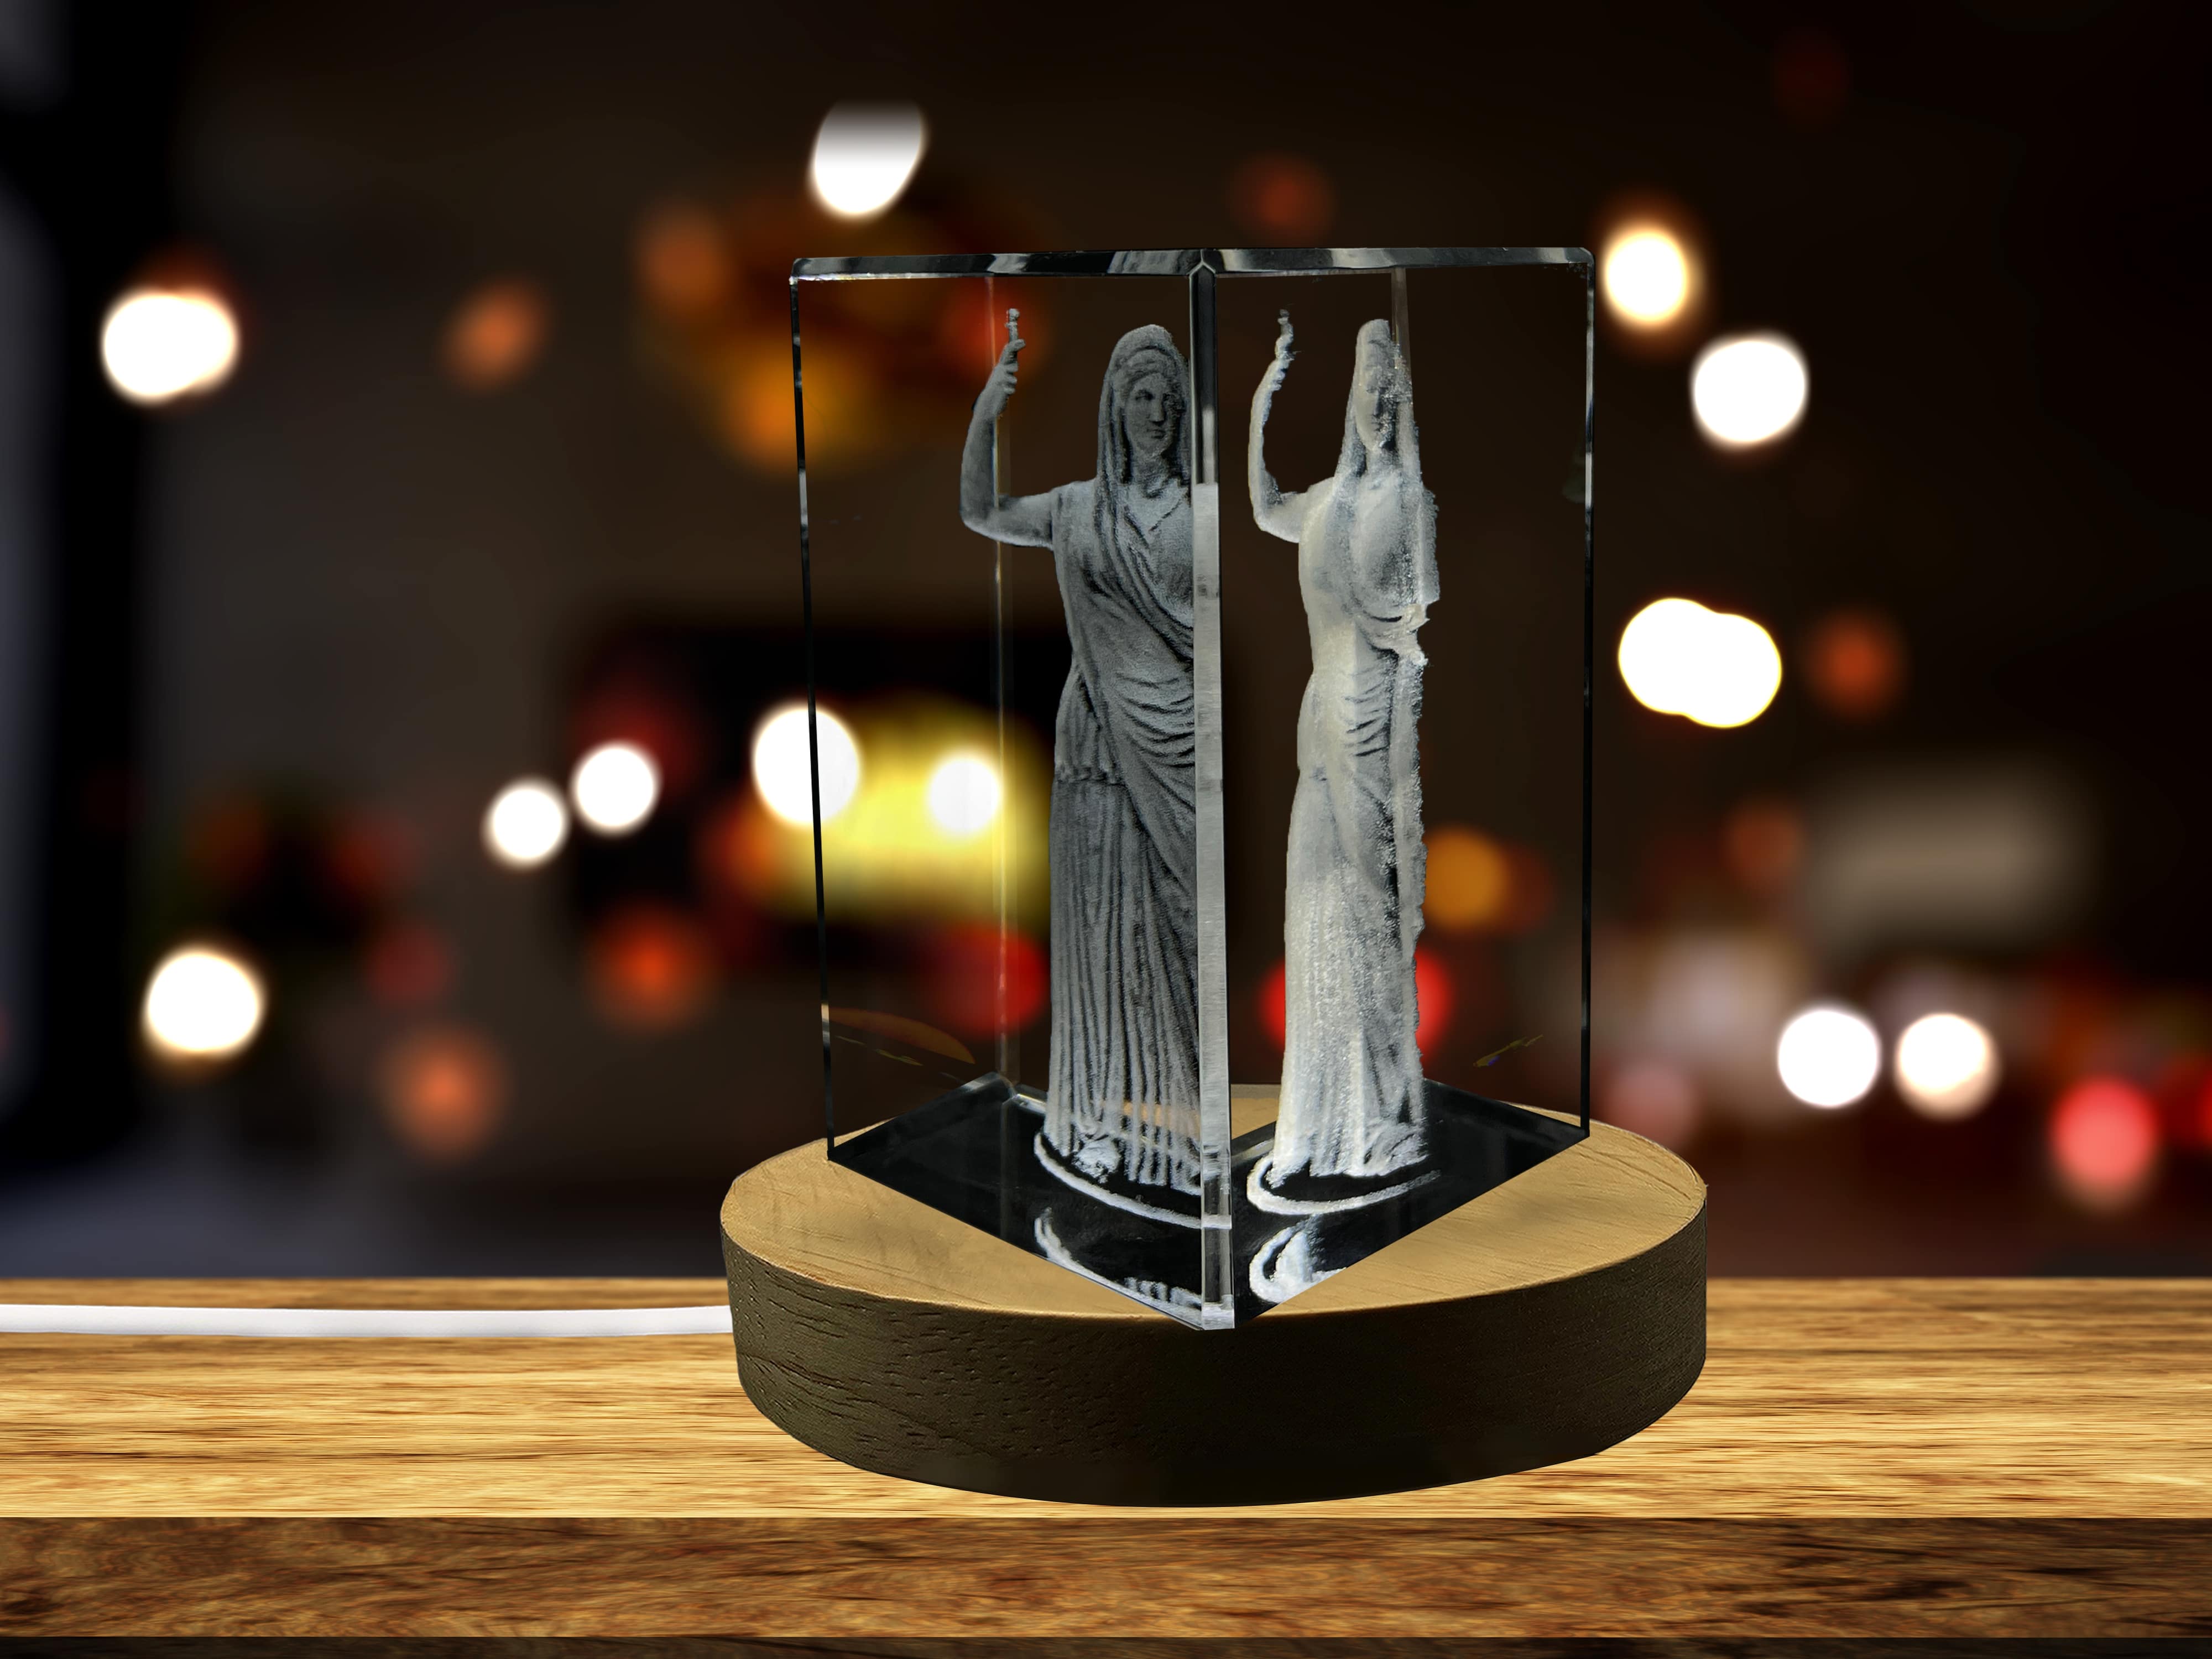 Hera 3D Engraved Crystal Keepsake/Gift/Decor/Collectible/Souvenir A&B Crystal Collection